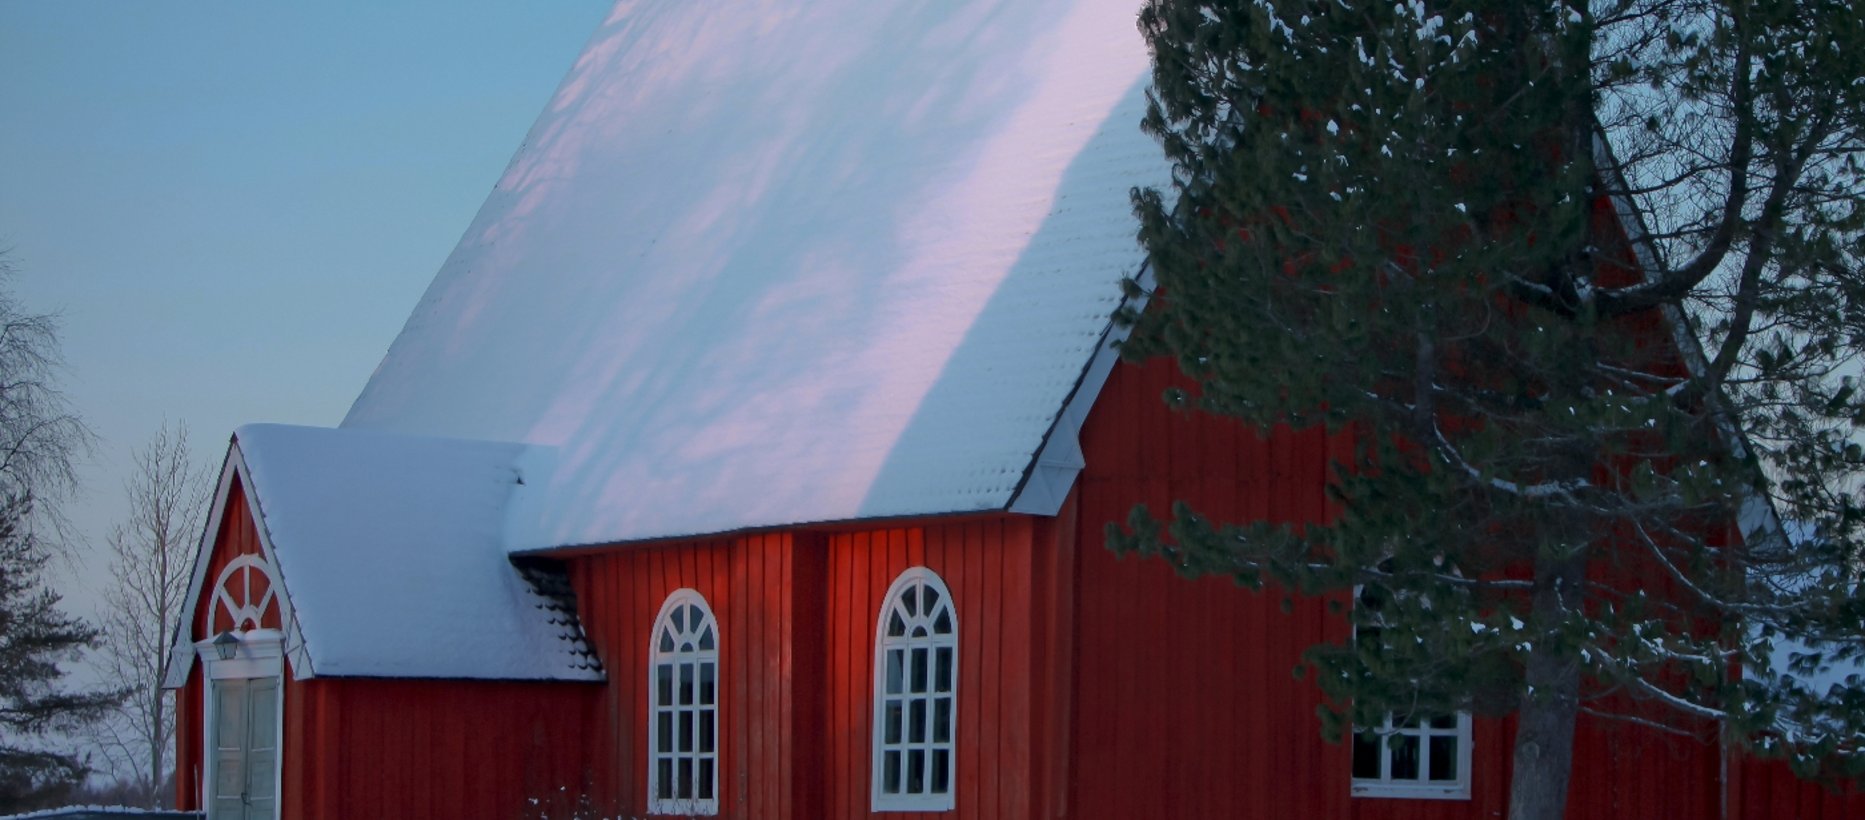 Vanha kirkko talvella. Kuva Lea Ruotsalainen